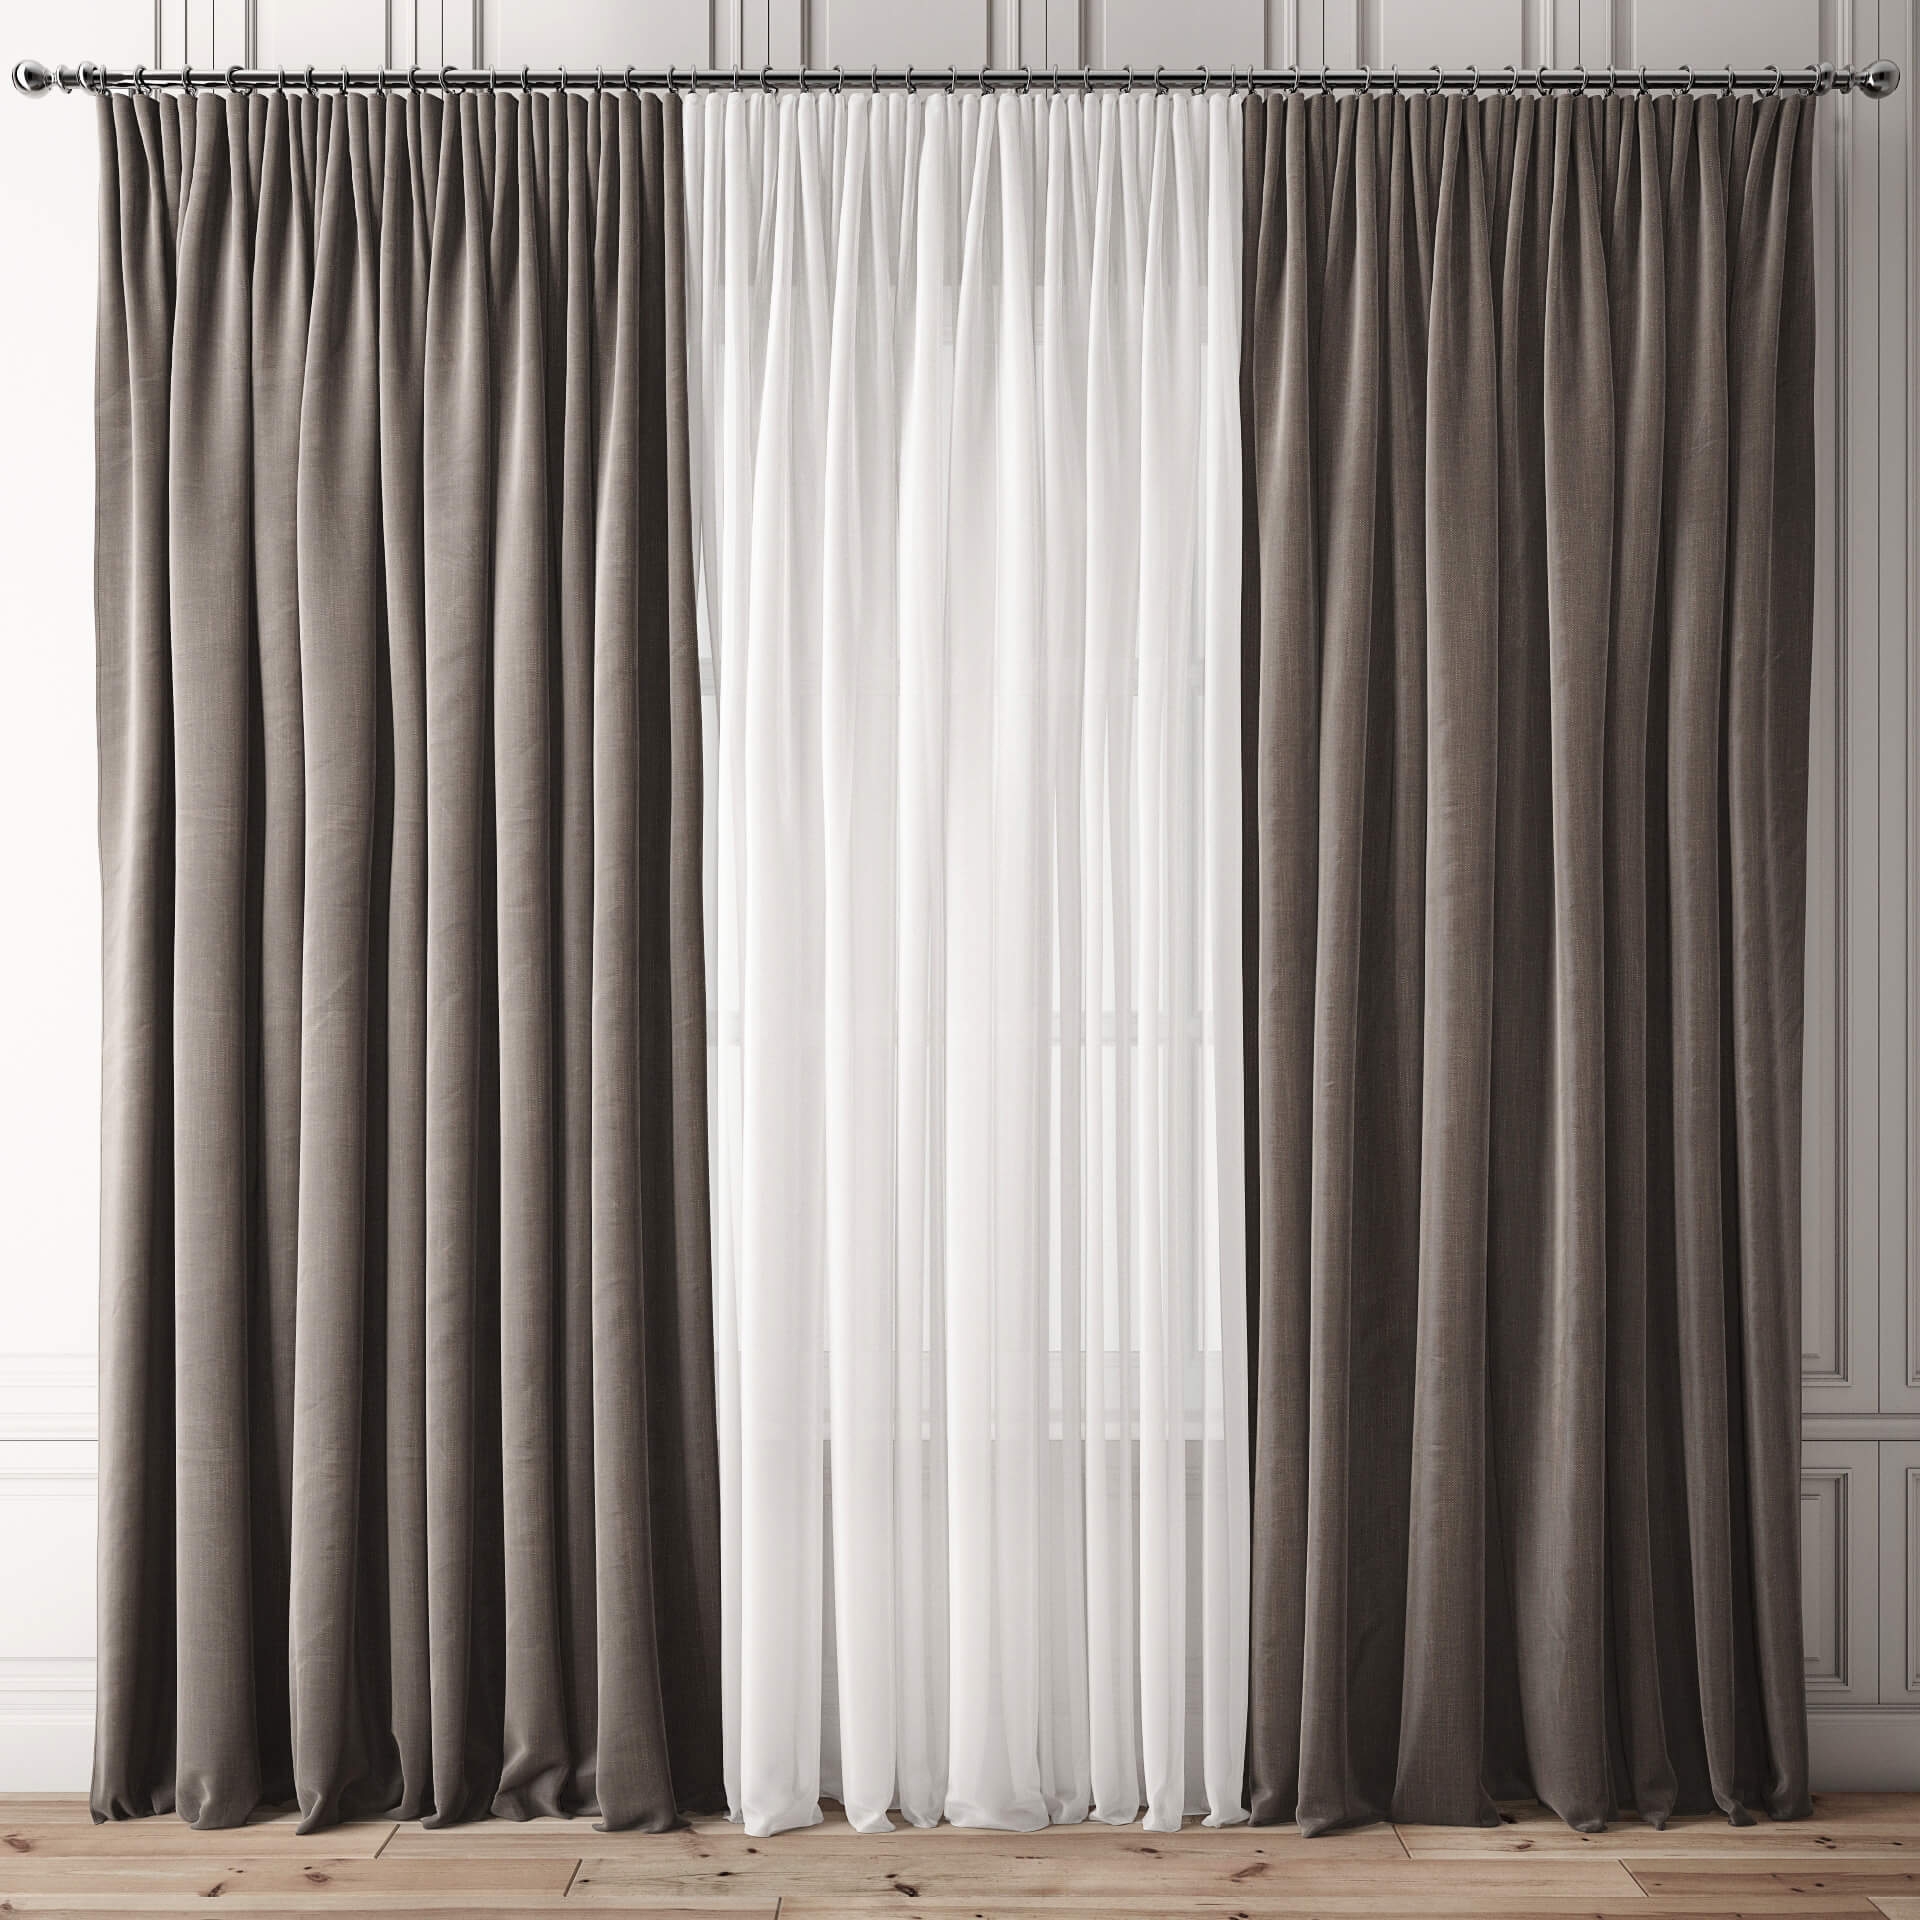 Curtain 1. 3ддд шторы. Шторы прямые. Портьера 3д модель. Портьеры прямые.